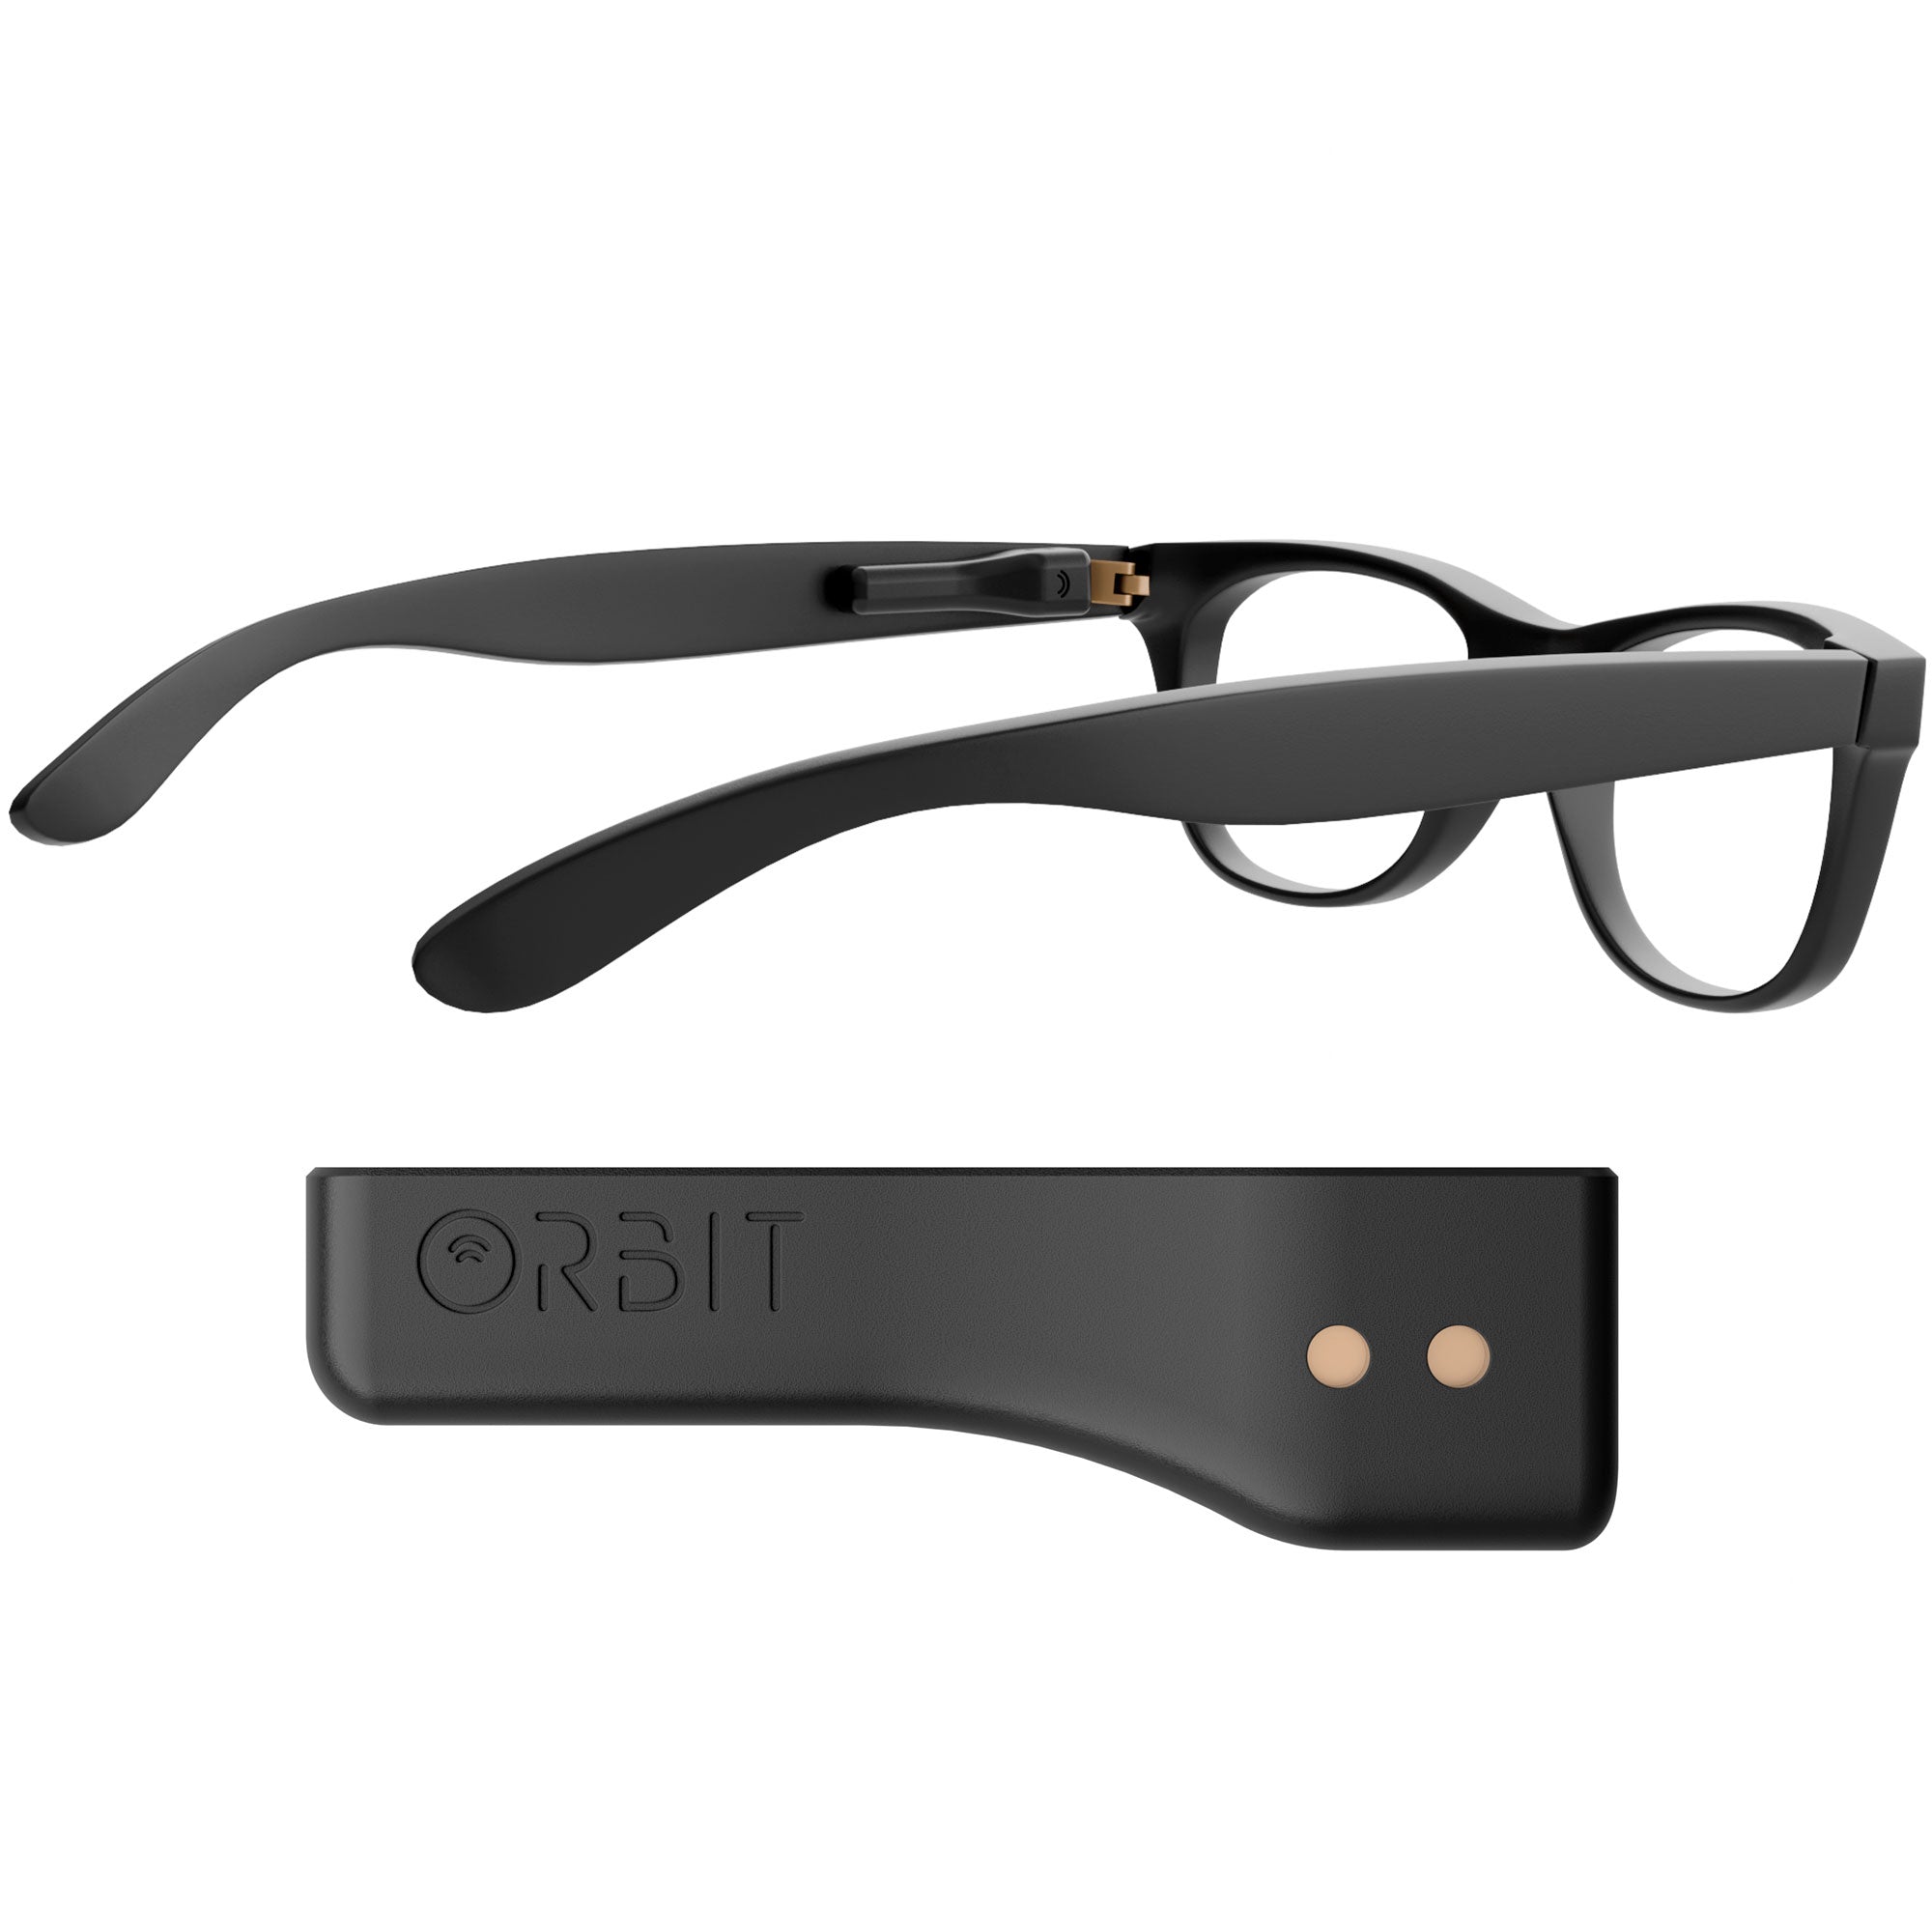 Orbit x Glasses - Orbit